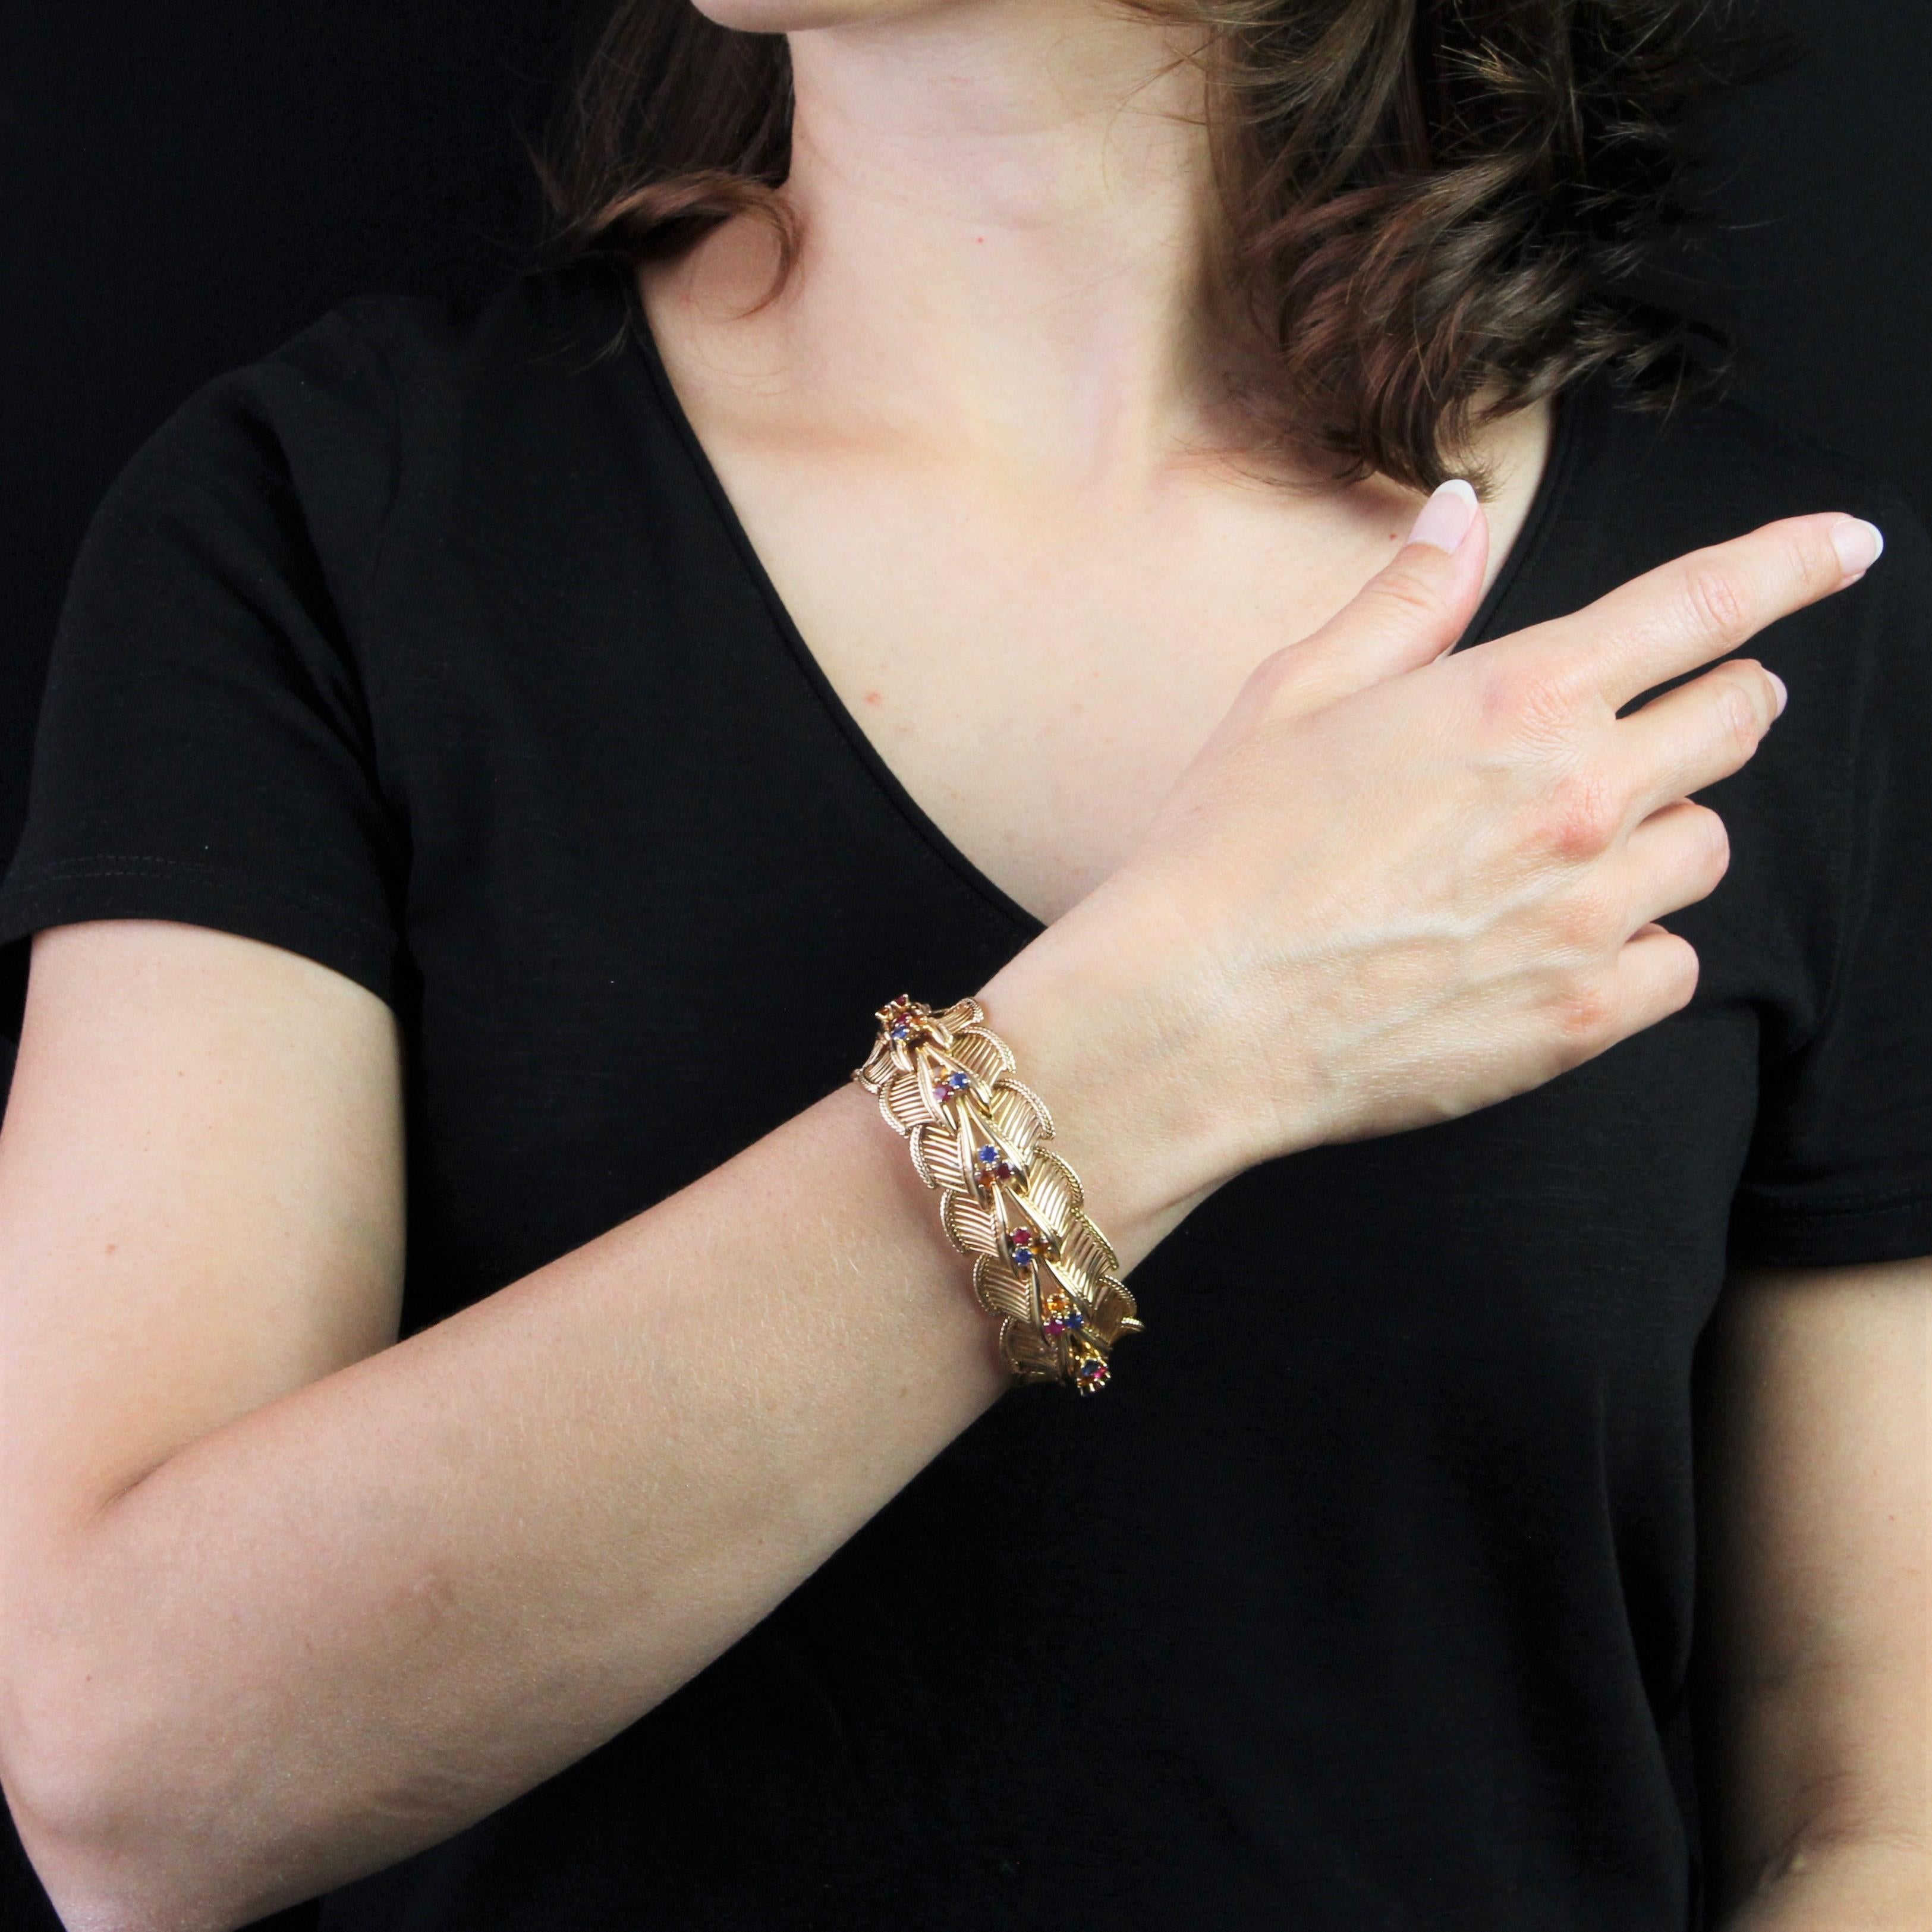 Armband aus 18 Karat Roségold, Eulenpunze.
Das imposante Retro-Armband besteht aus einer Reihe von Mustern aus durchbrochenen Goldfäden und Goldkordeln, die jeweils mit 3 Steinen verziert sind: Rubinen, Saphiren und Zitrinen, die alle miteinander